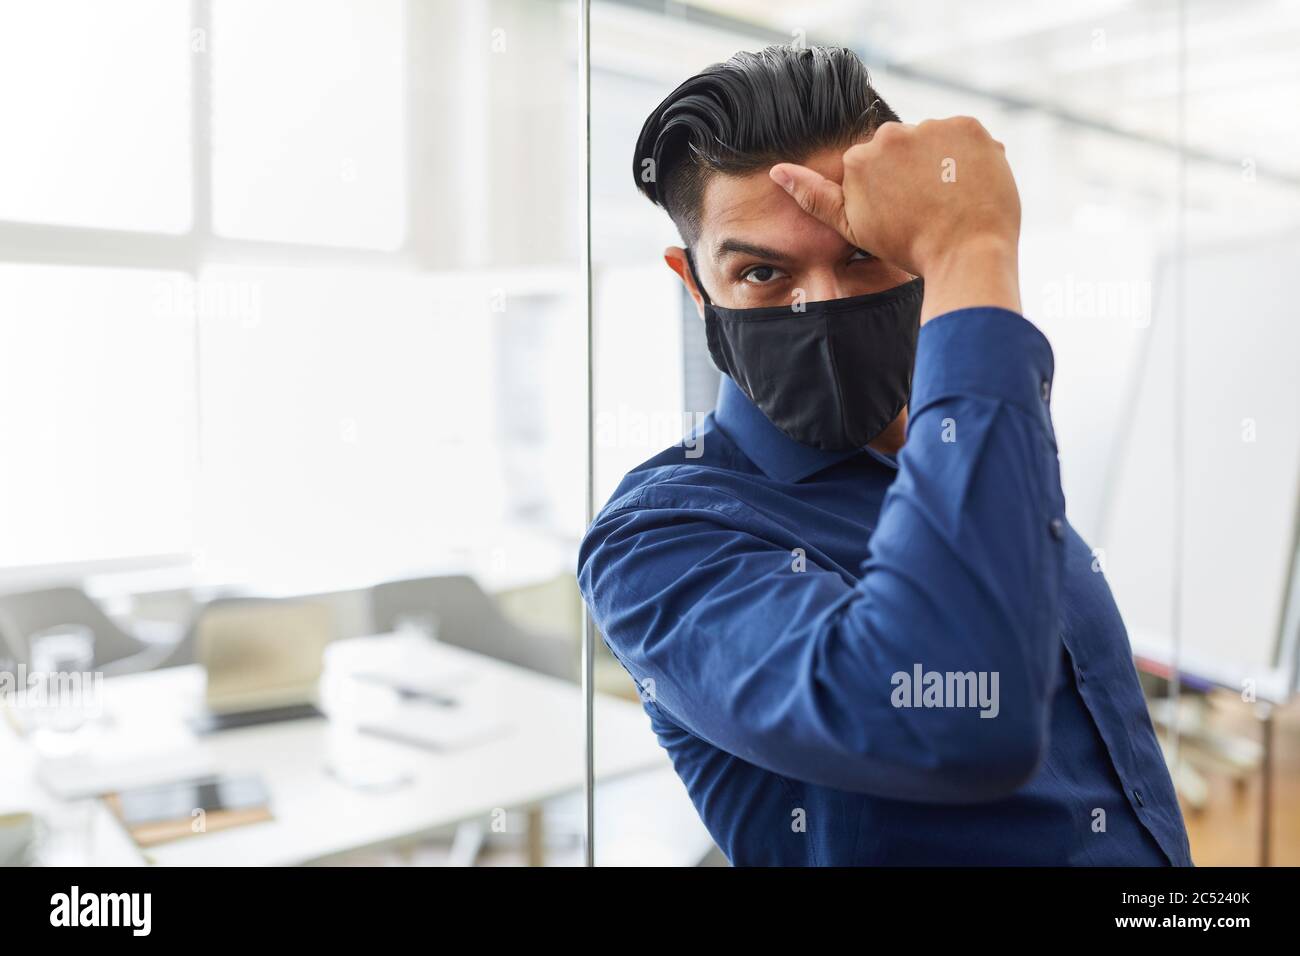 Estresado hombre de negocios en la oficina usando una máscara debido a Covid-19 y la pandemia de coronavirus Foto de stock